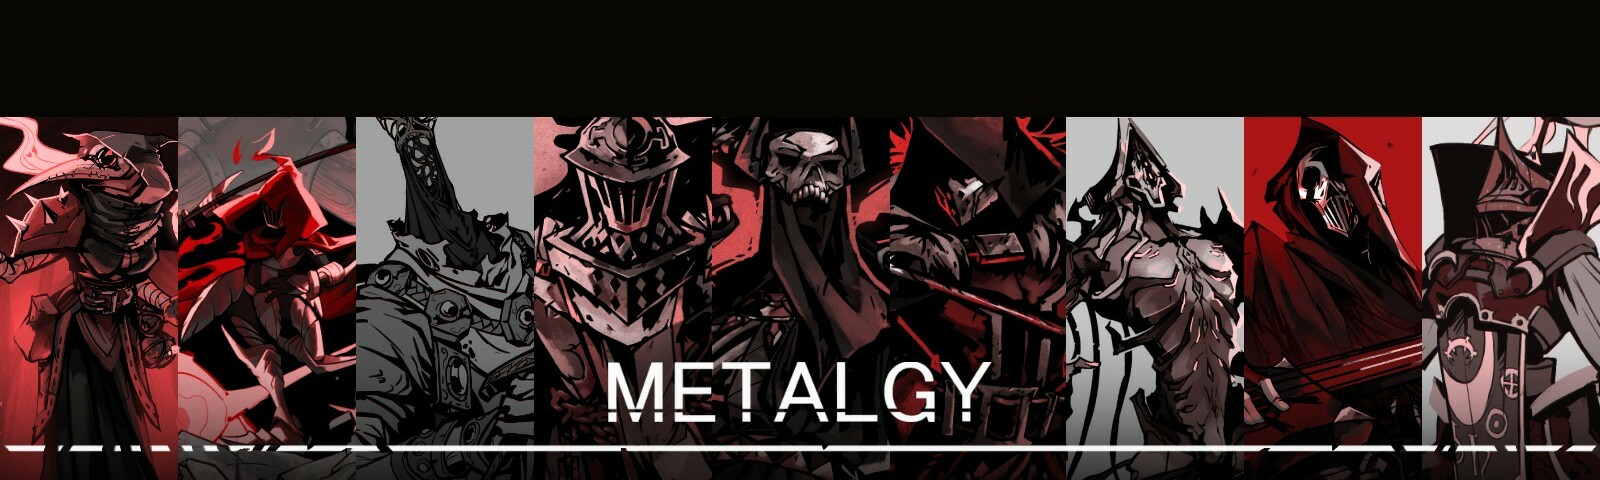 обложка автора MetalGy